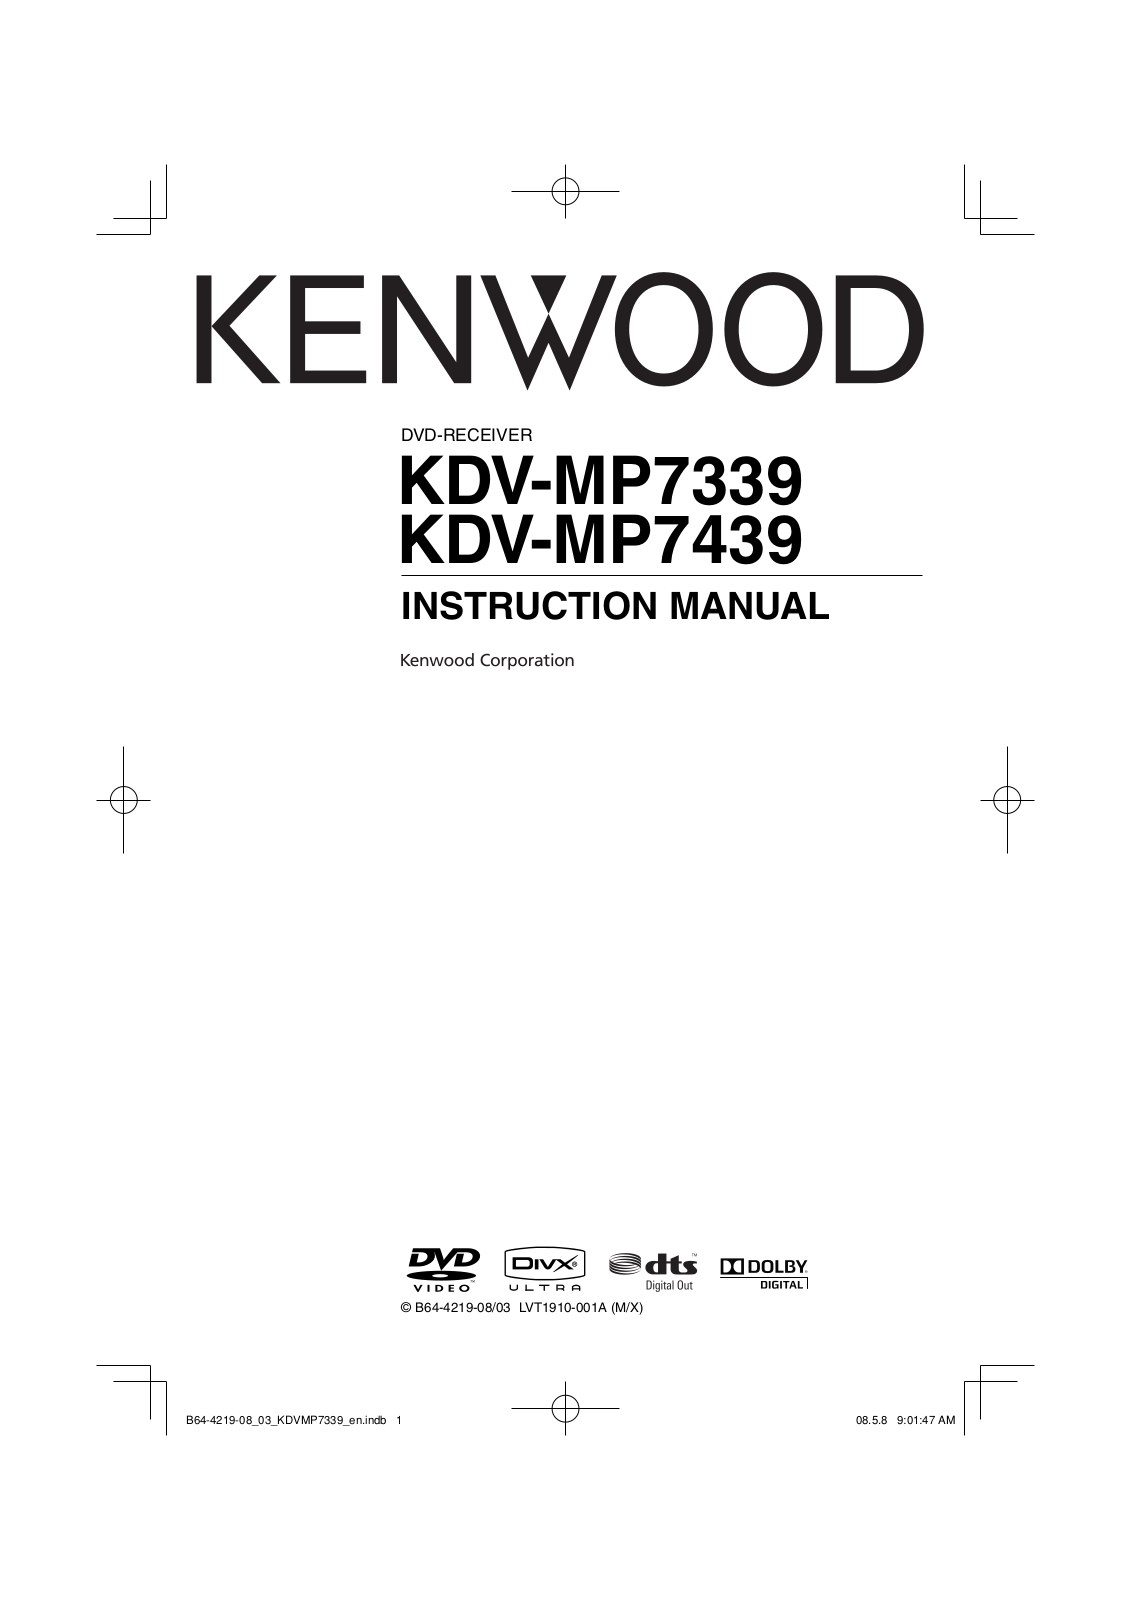 Kenwood KDV-MP7439, KDV-MP7339 User Manual